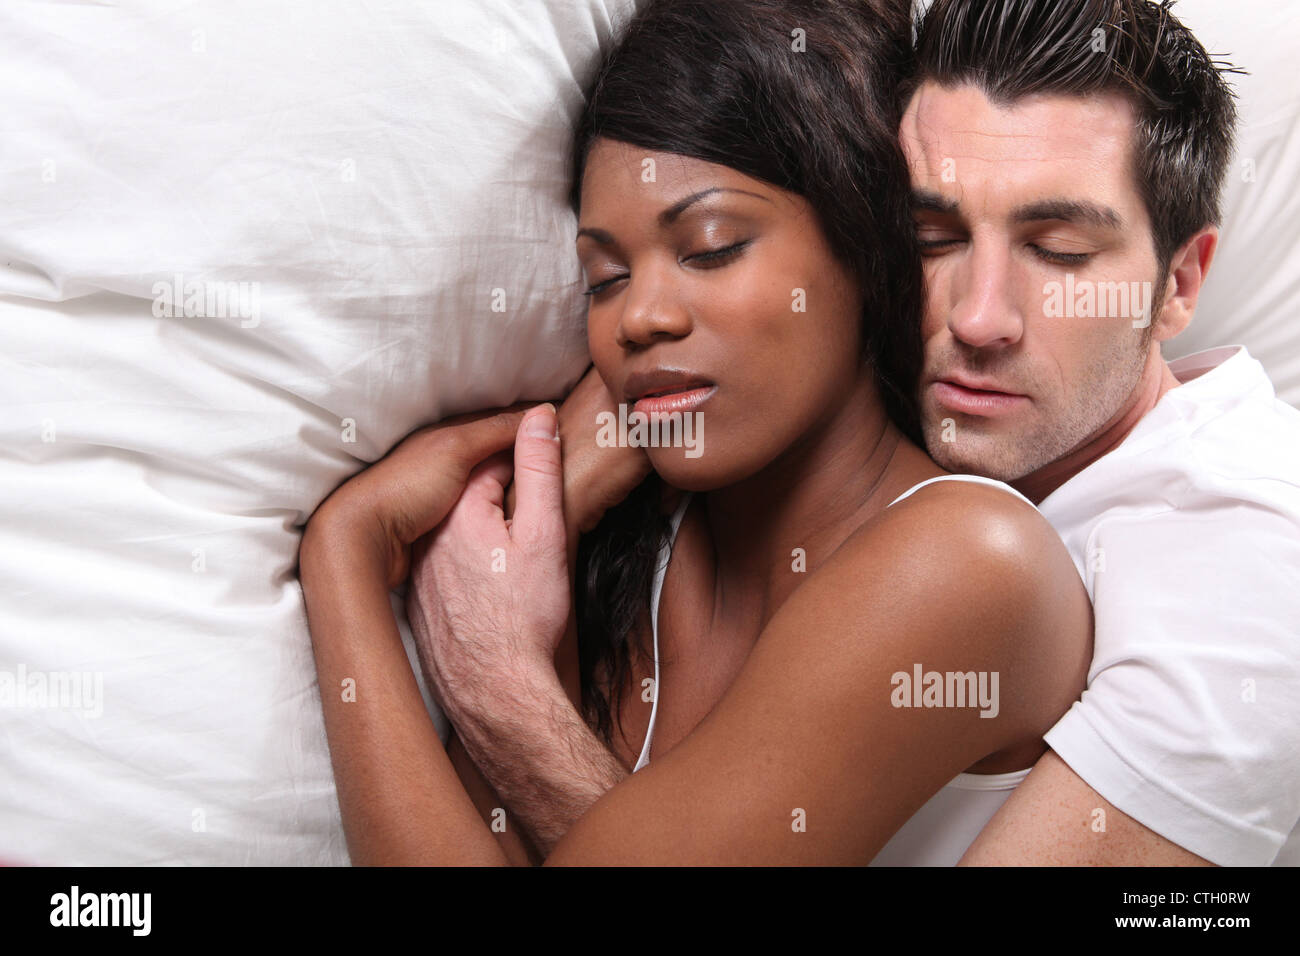 Paar im Bett kuscheln Stockfotografie - Alamy